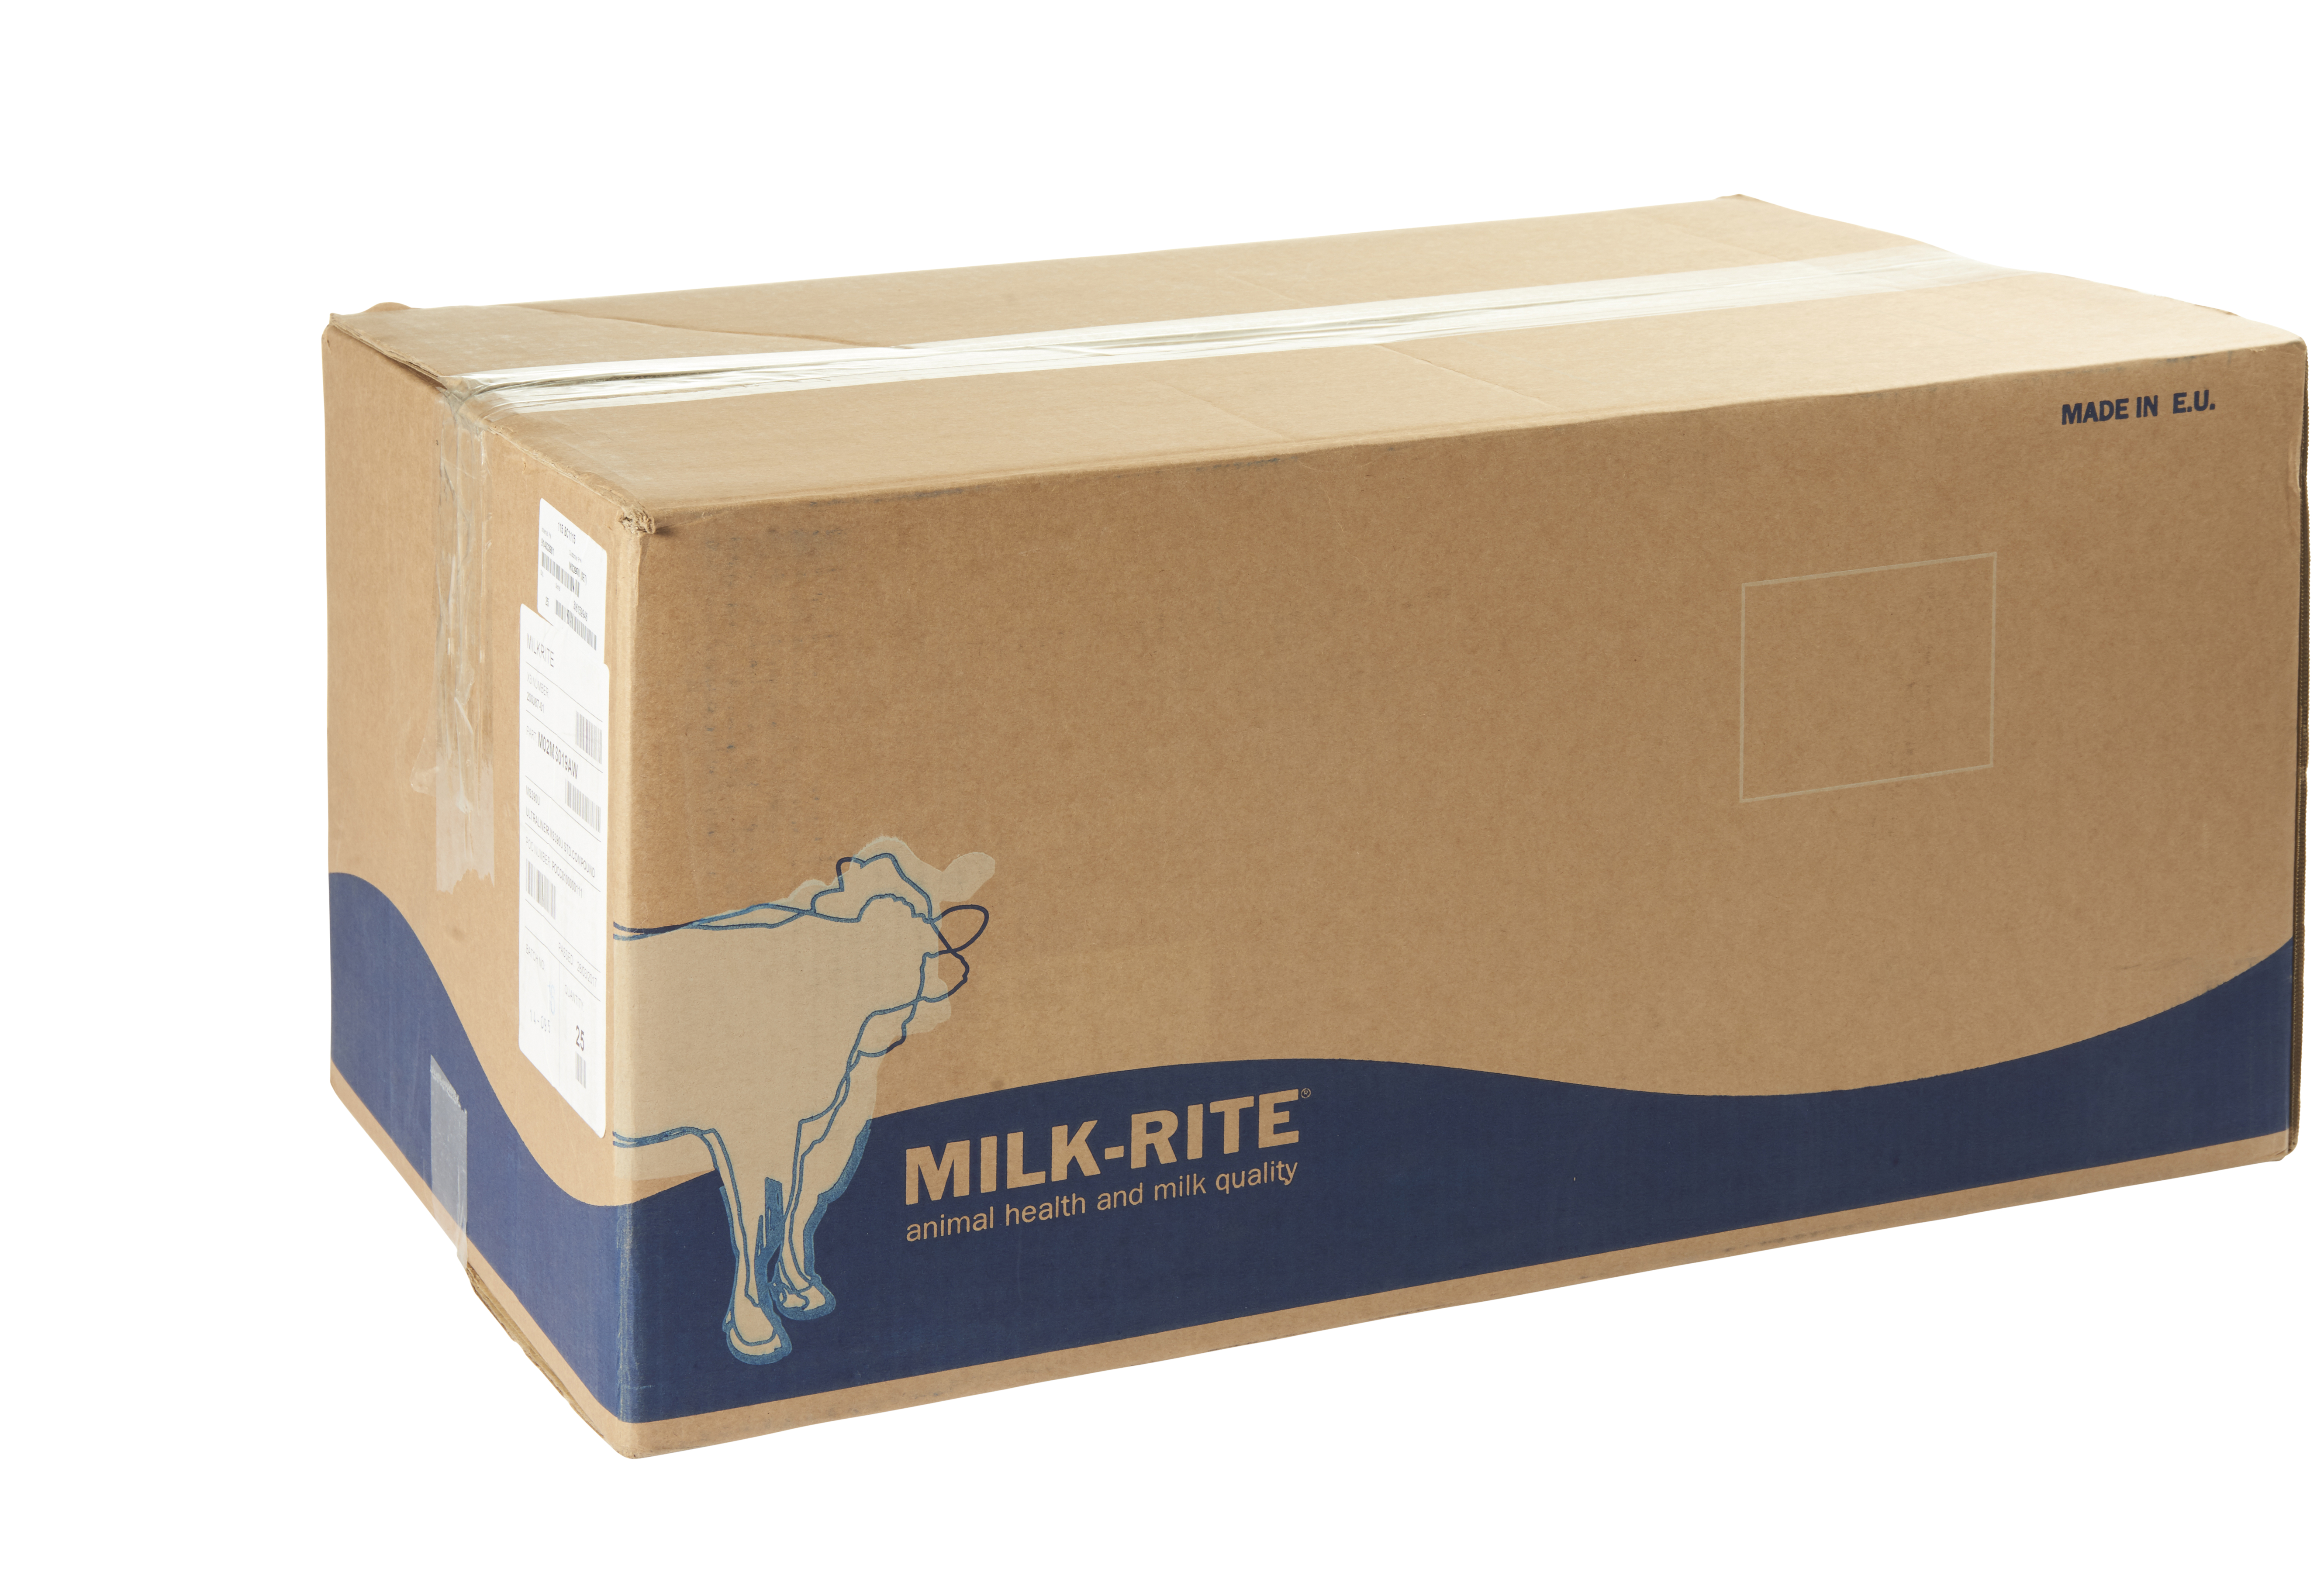 Zitzengummi Milk-Rite TLC-FW 1 à 4 Stück